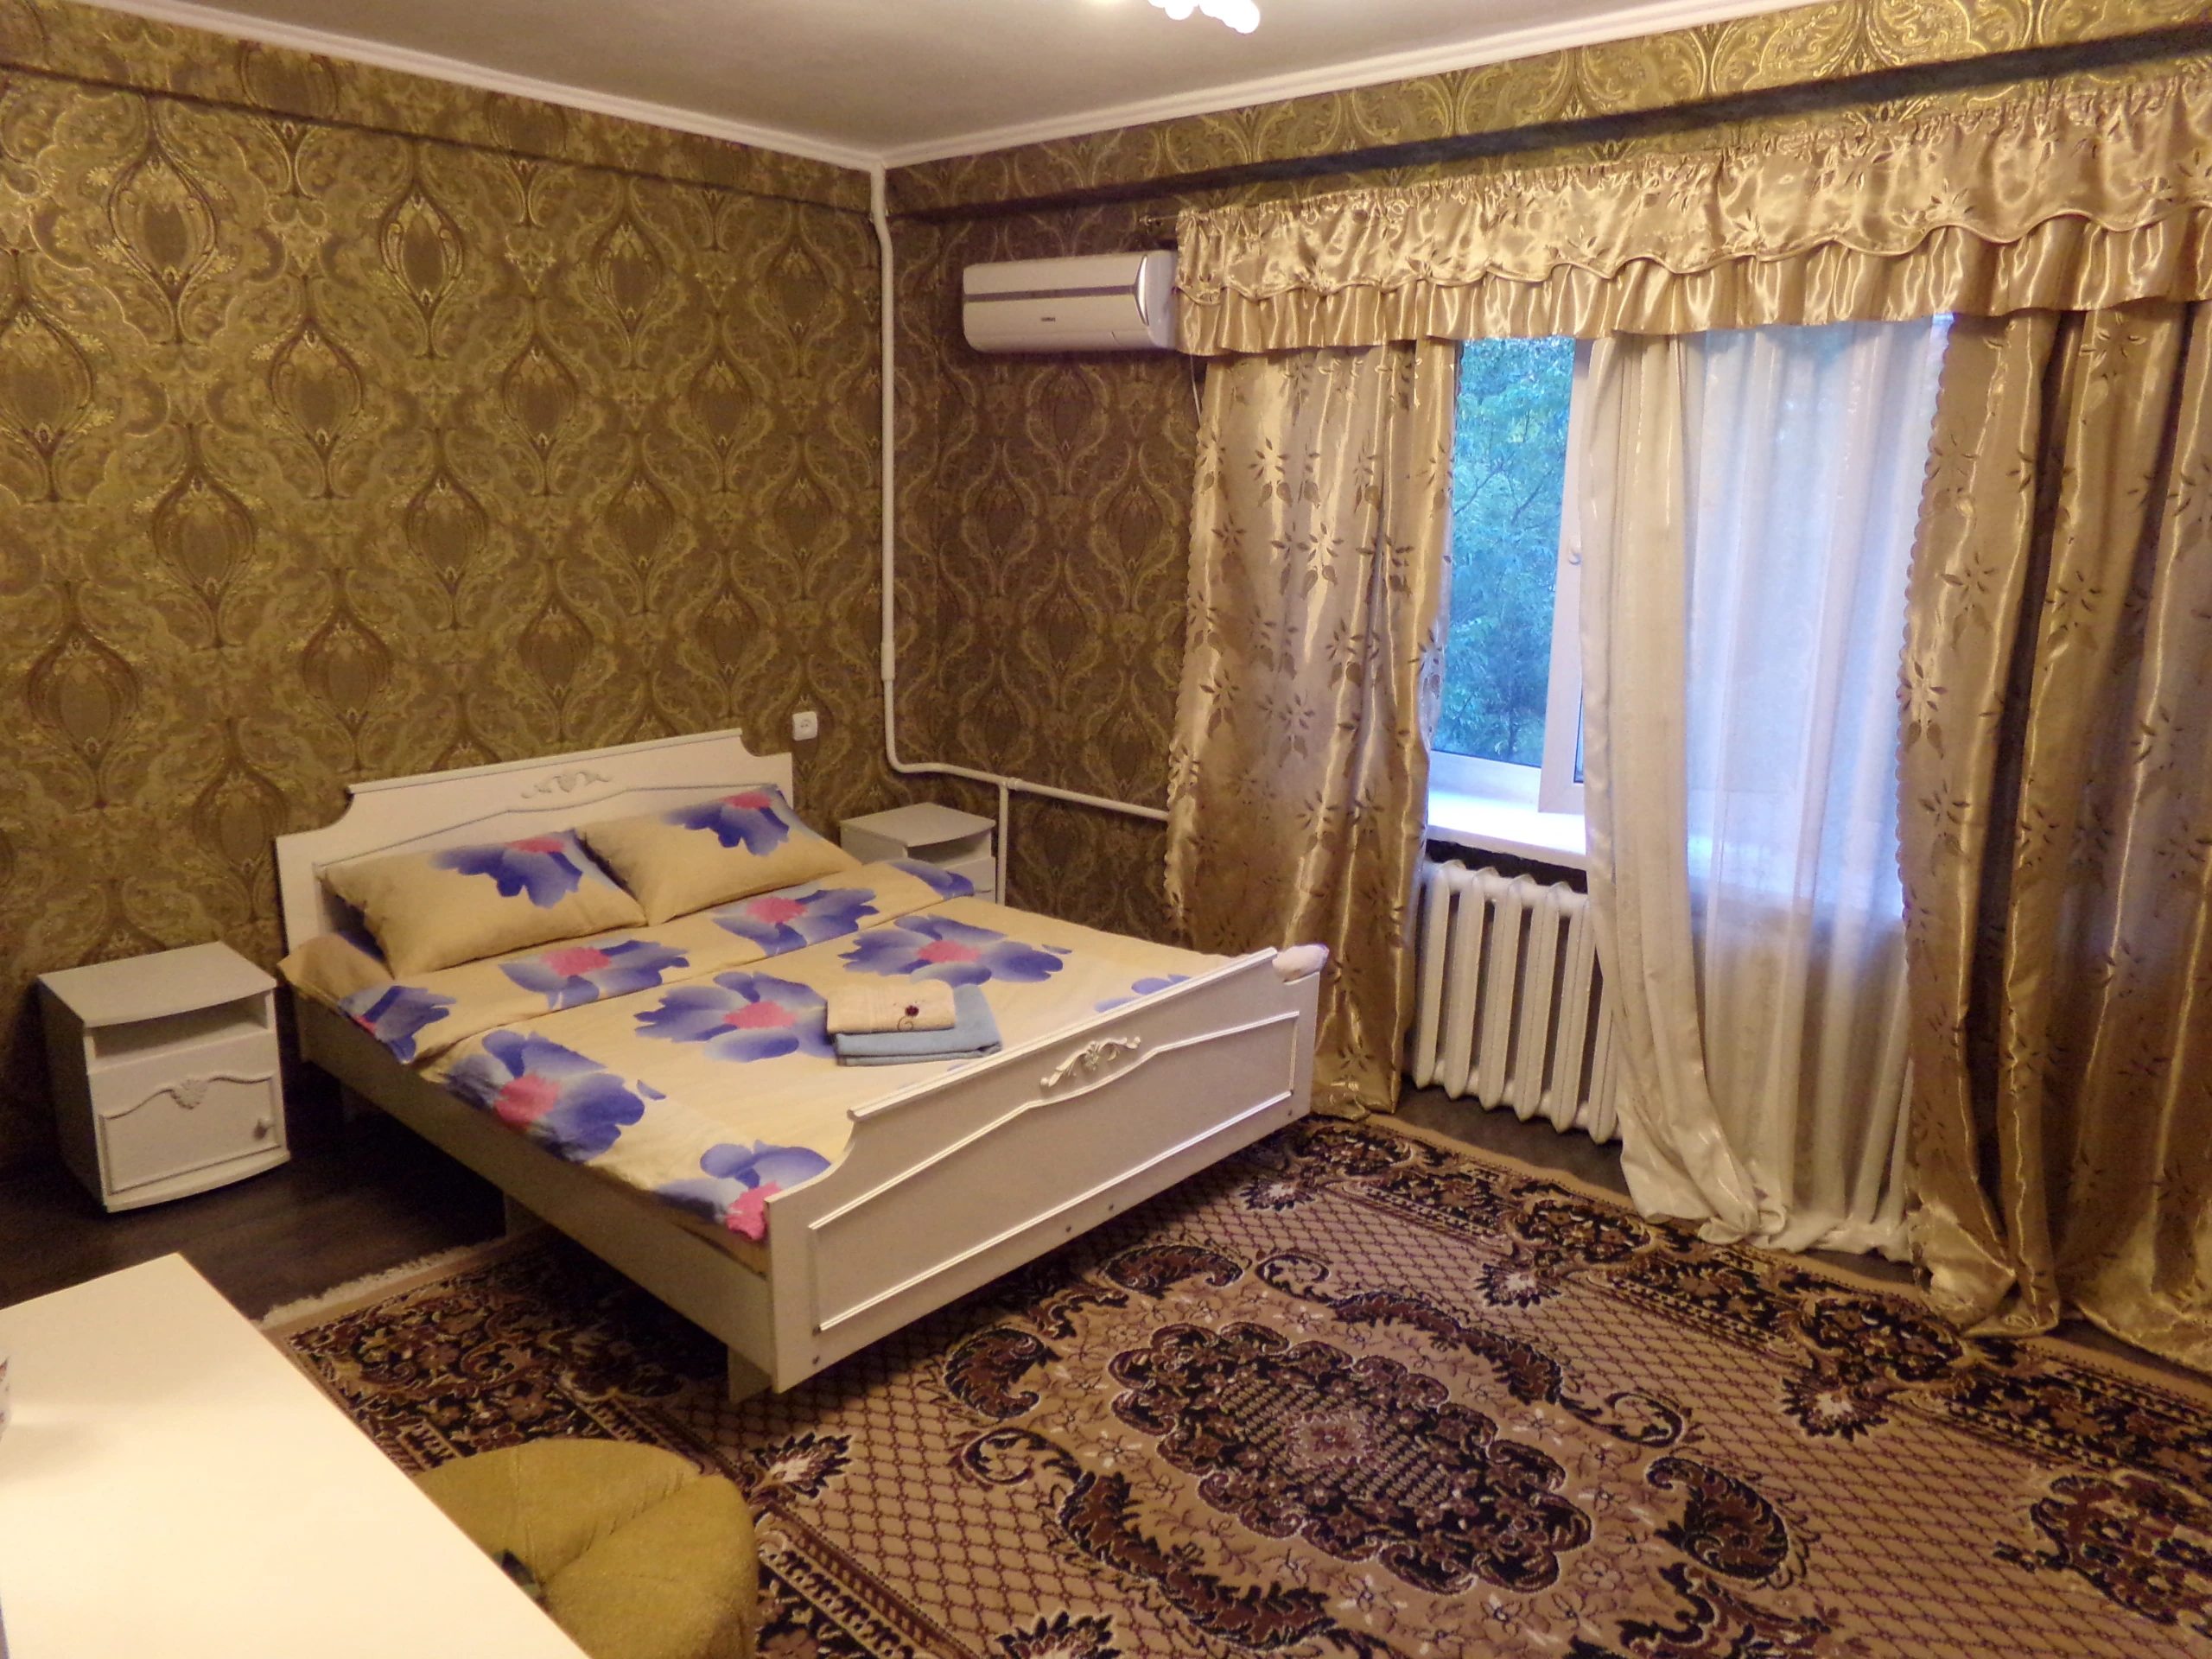 4-кімнатна квартира в центрі Київа біля метро Печерська, ТРЦ Гулівер